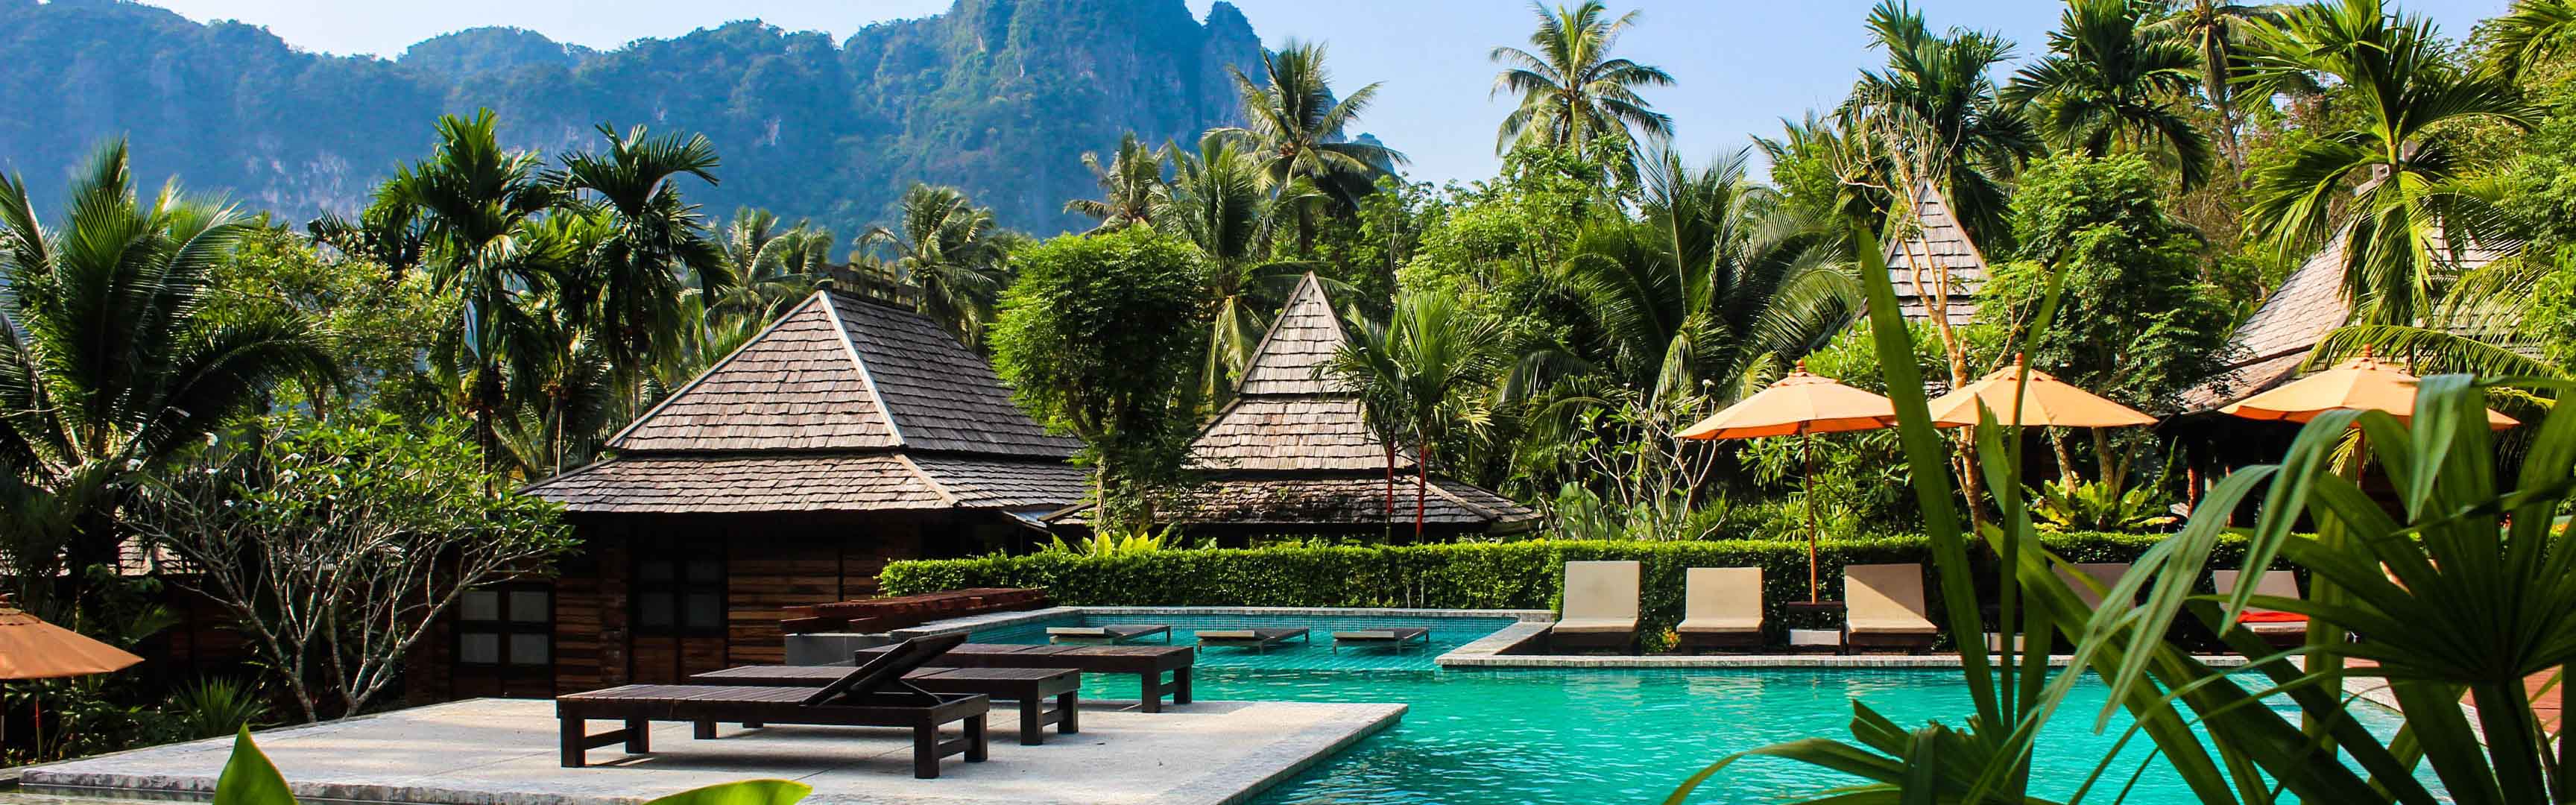 Những địa điểm du lịch hot nhất tại Thái Lan - Cùng MoMo khám phá trọn vẹn xứ Chùa Vàng